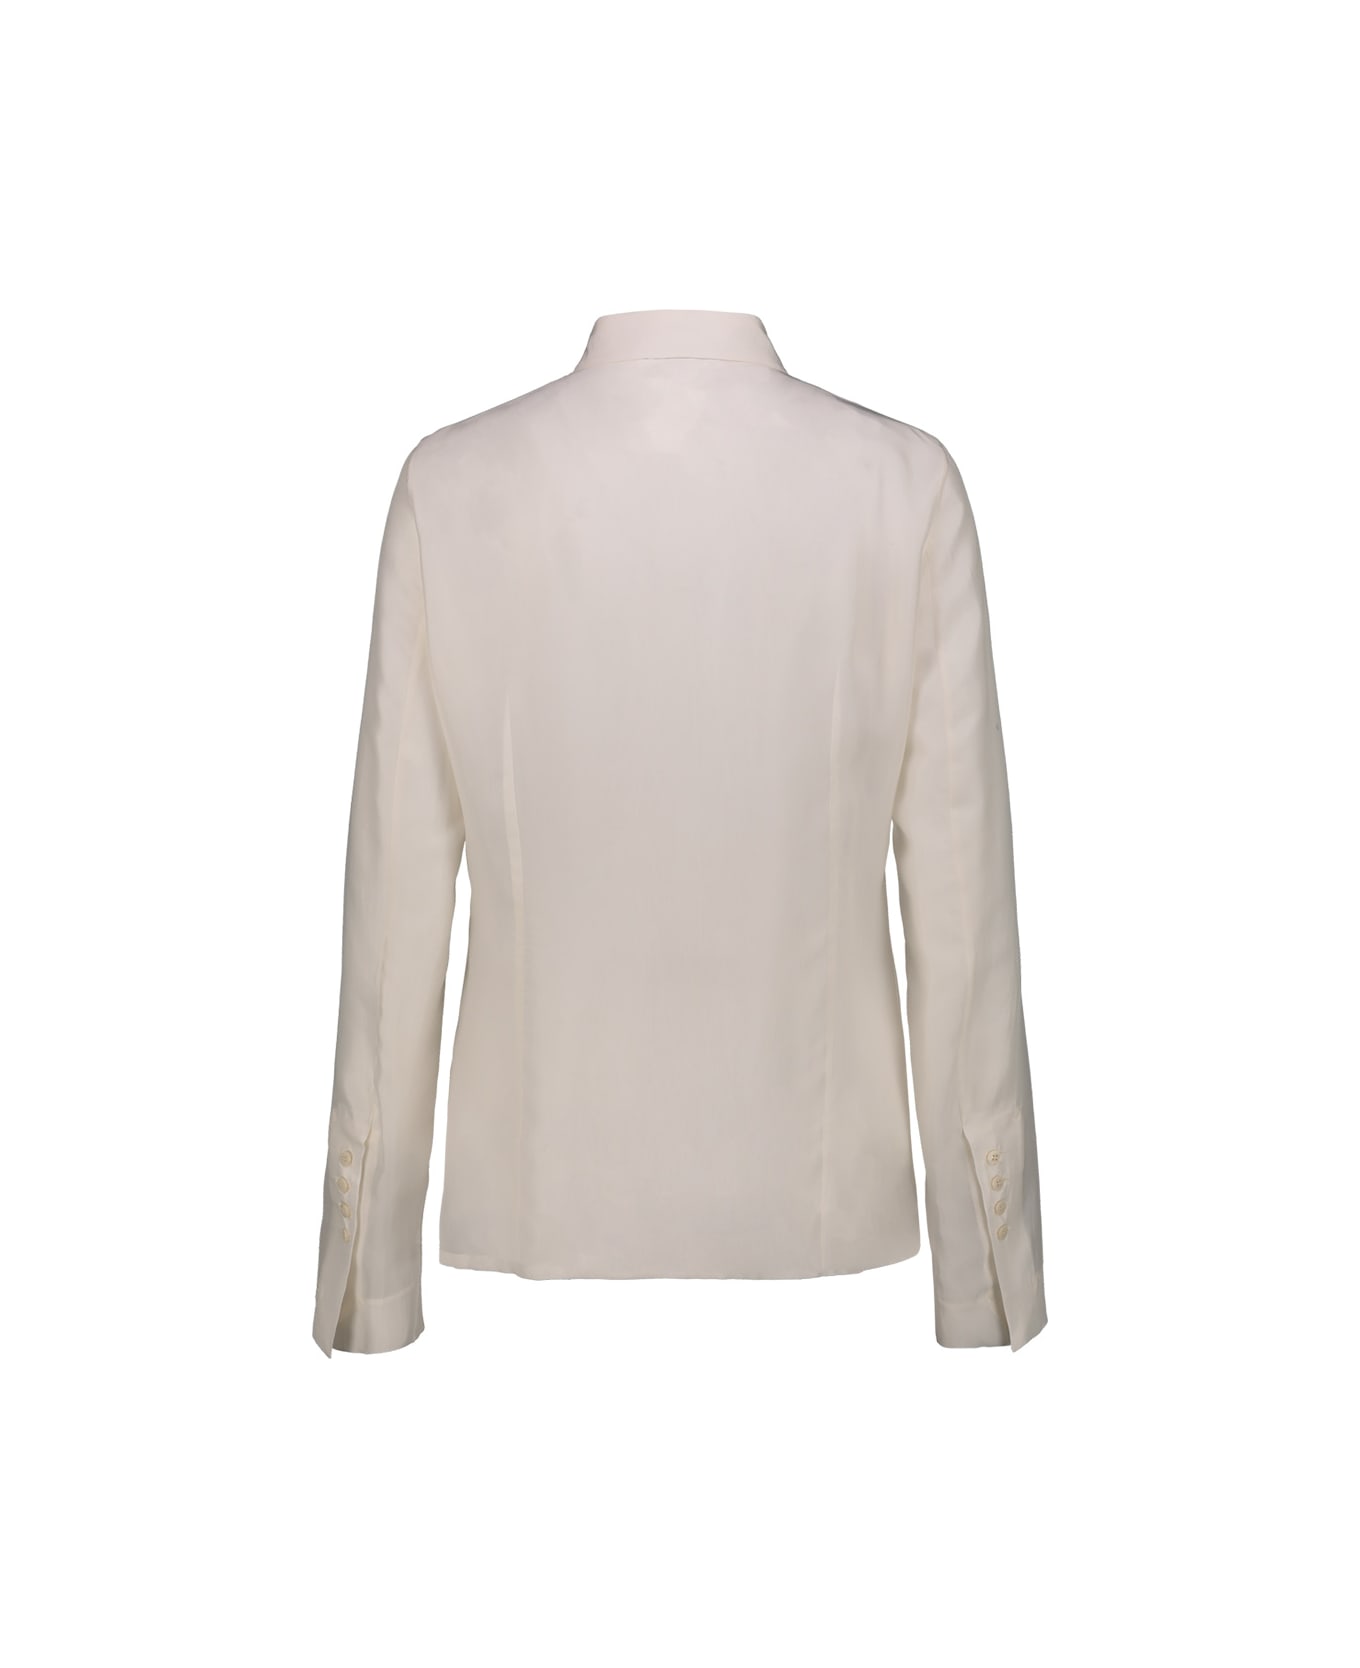 Sapio Cupro Shirt - White シャツ